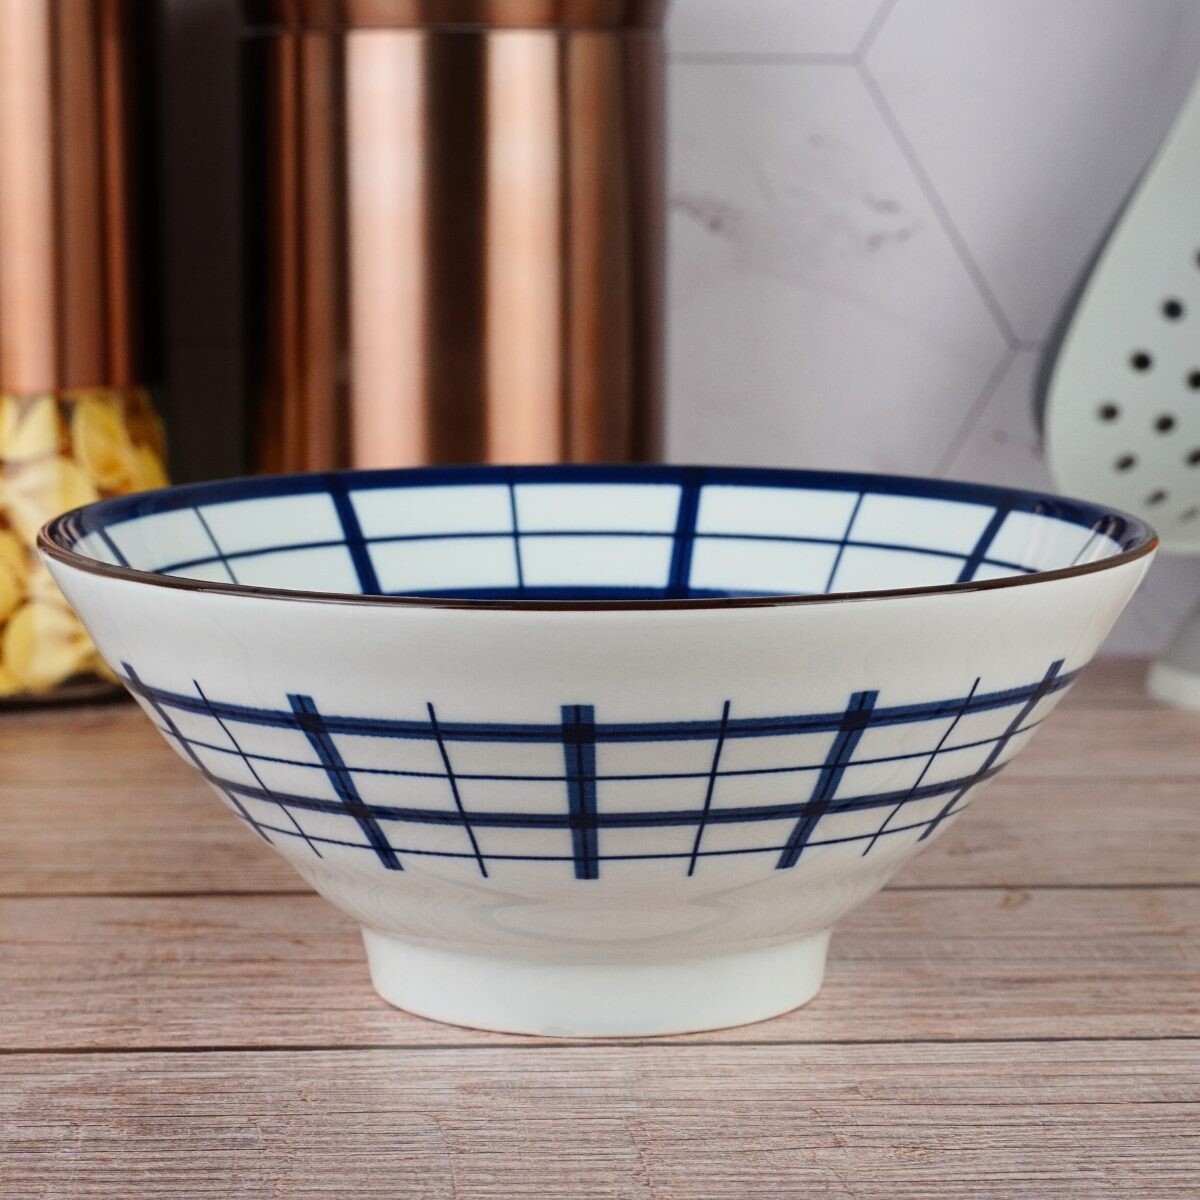 Bowl de cerámica con diseño 